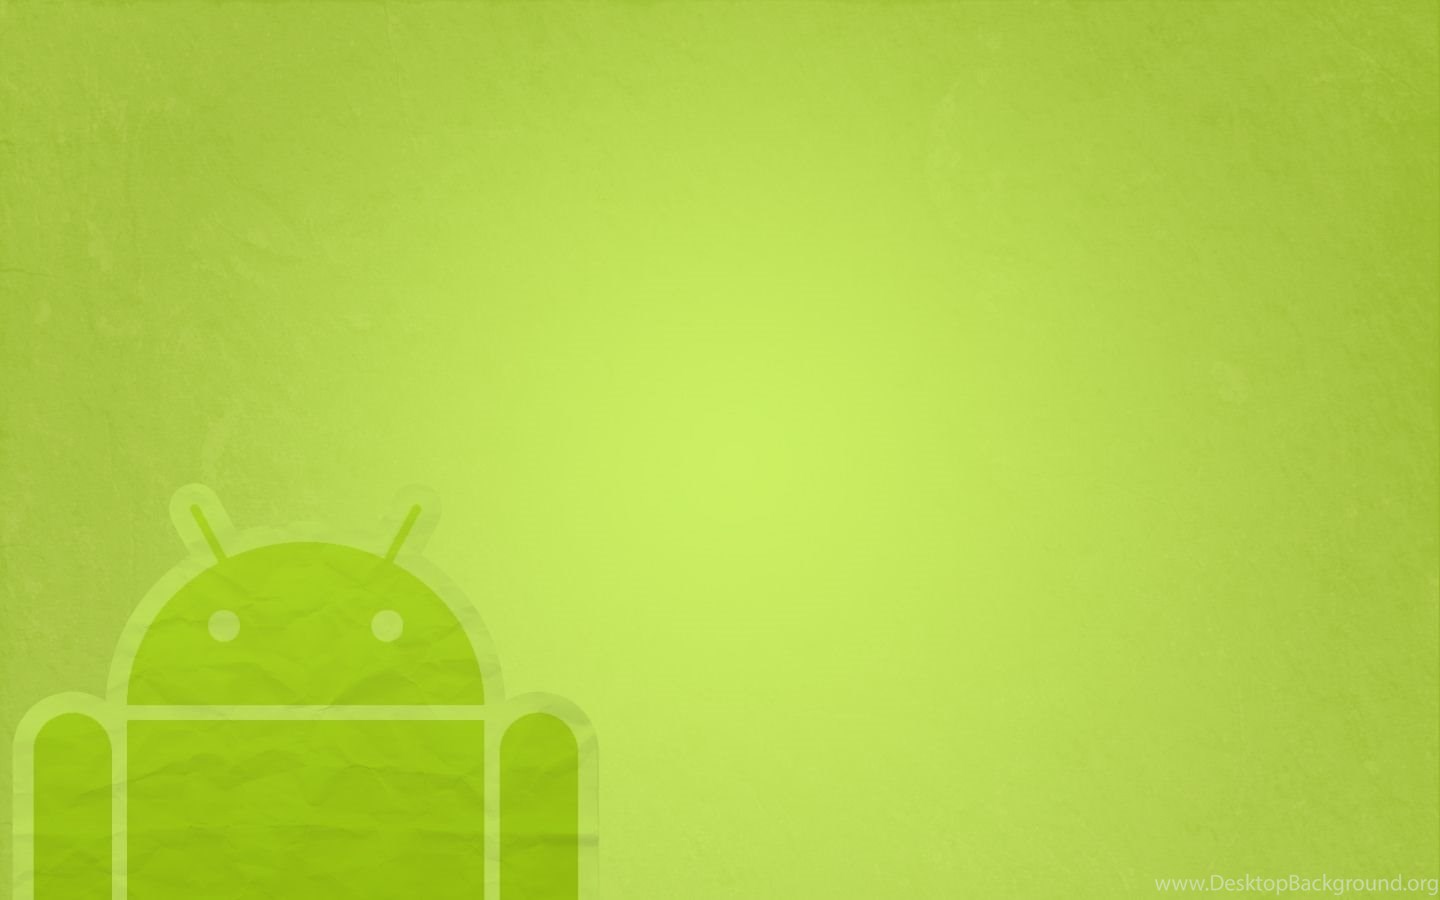 Обои андроида 10. Обои на андроид. Фон для приложения. Фон для приложения Android.